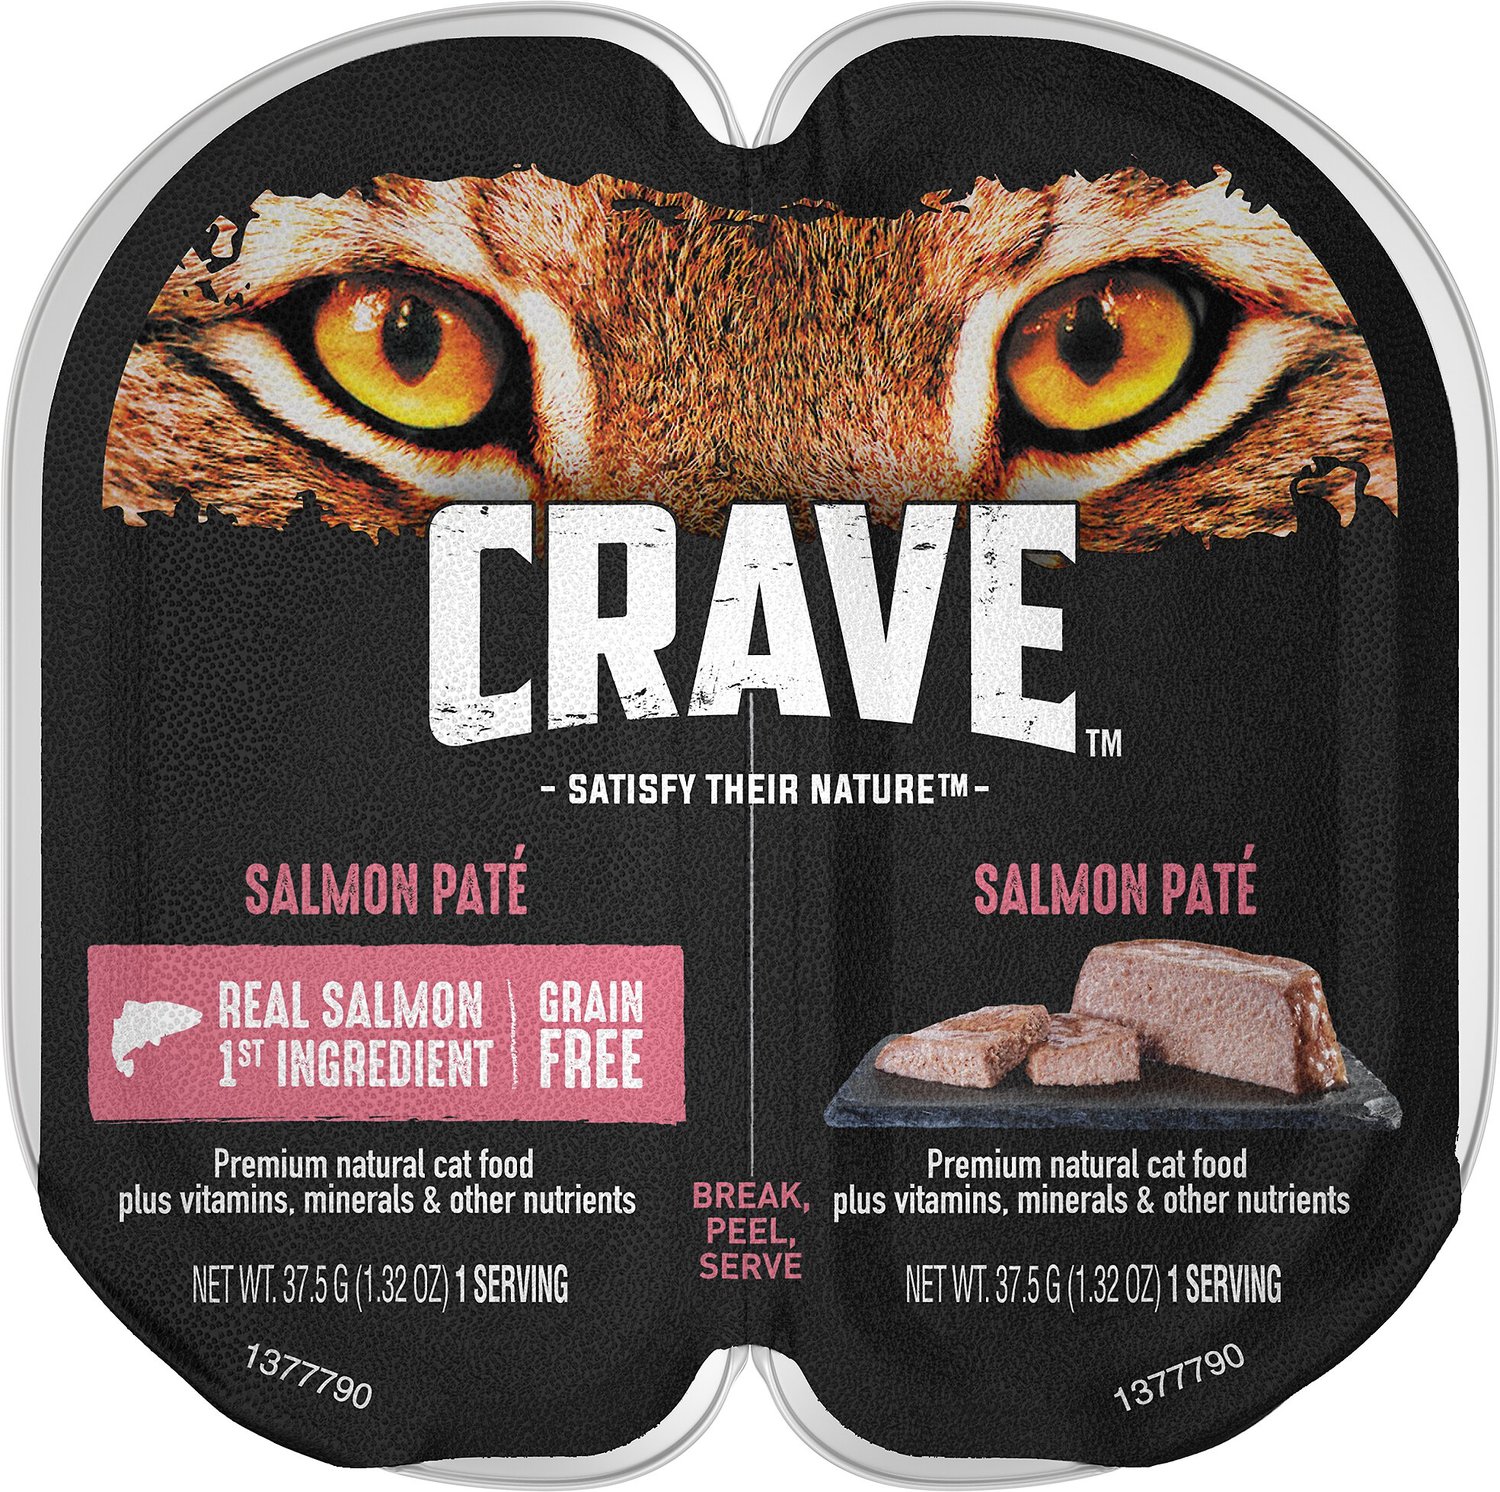 CRAVE Salmon Pate Grain-Free Cat Food 